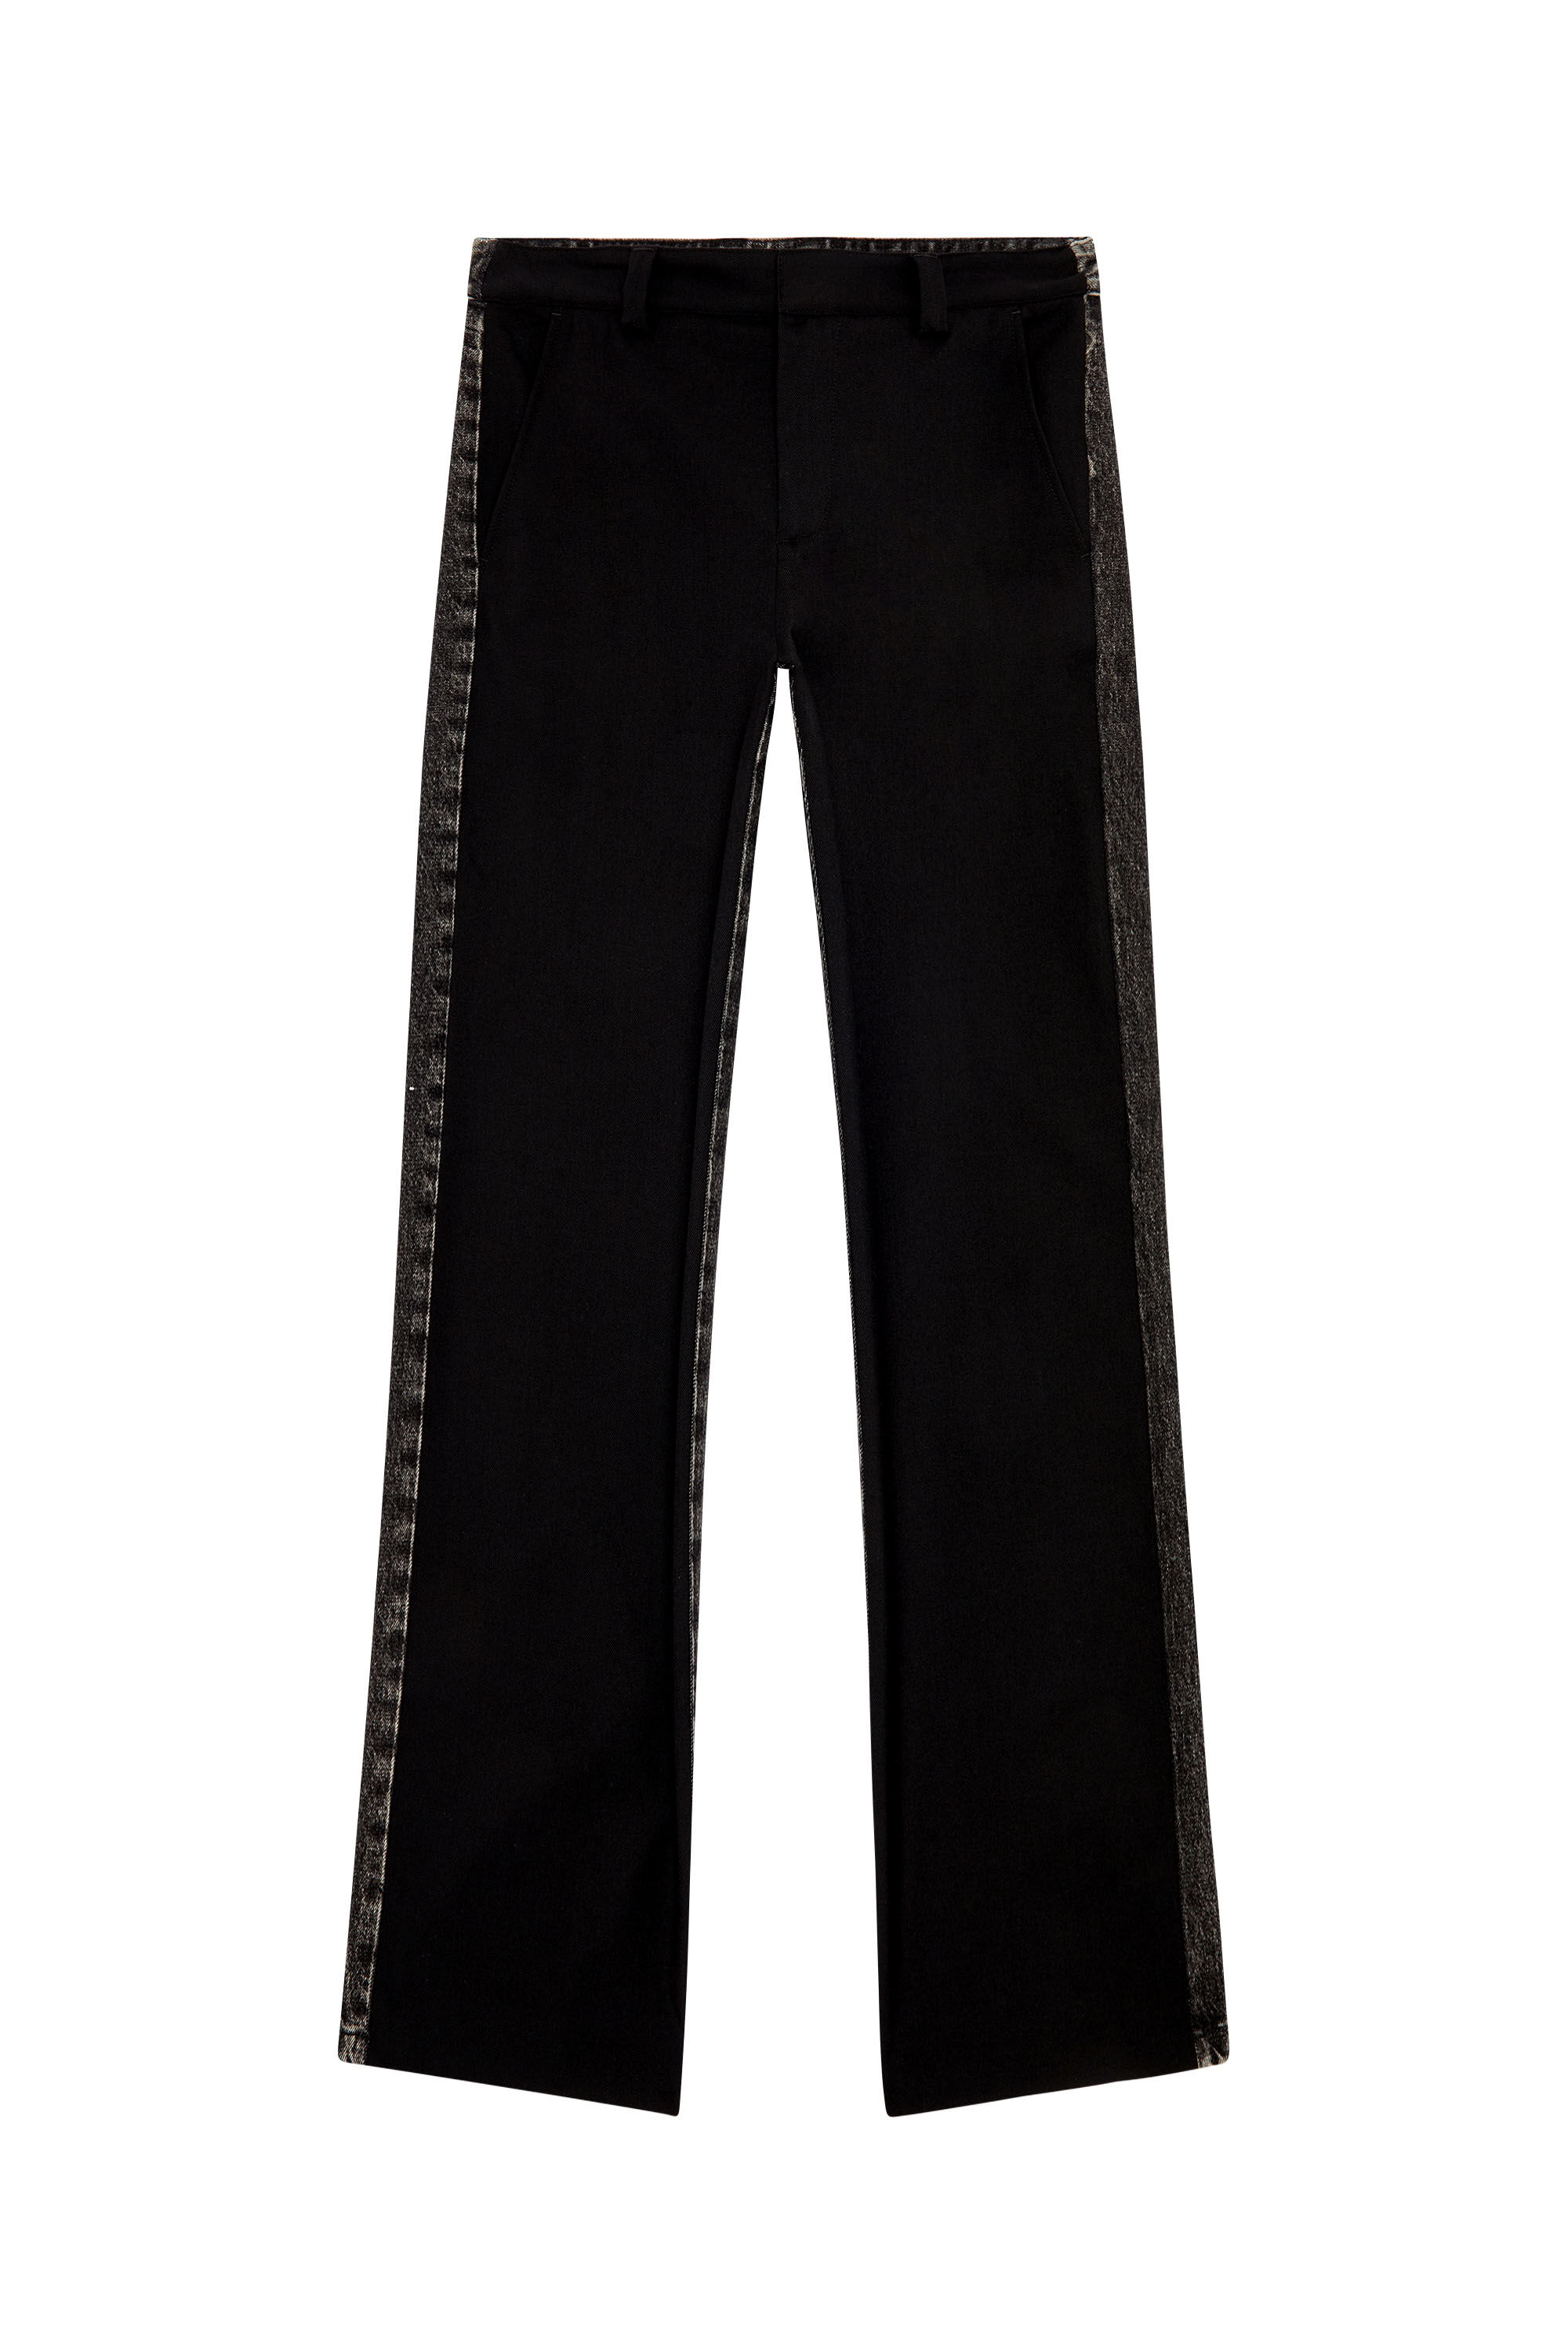 Diesel - P-WIRE-A, Man Hybrid pants in cool wool and denim in Black - Image 2